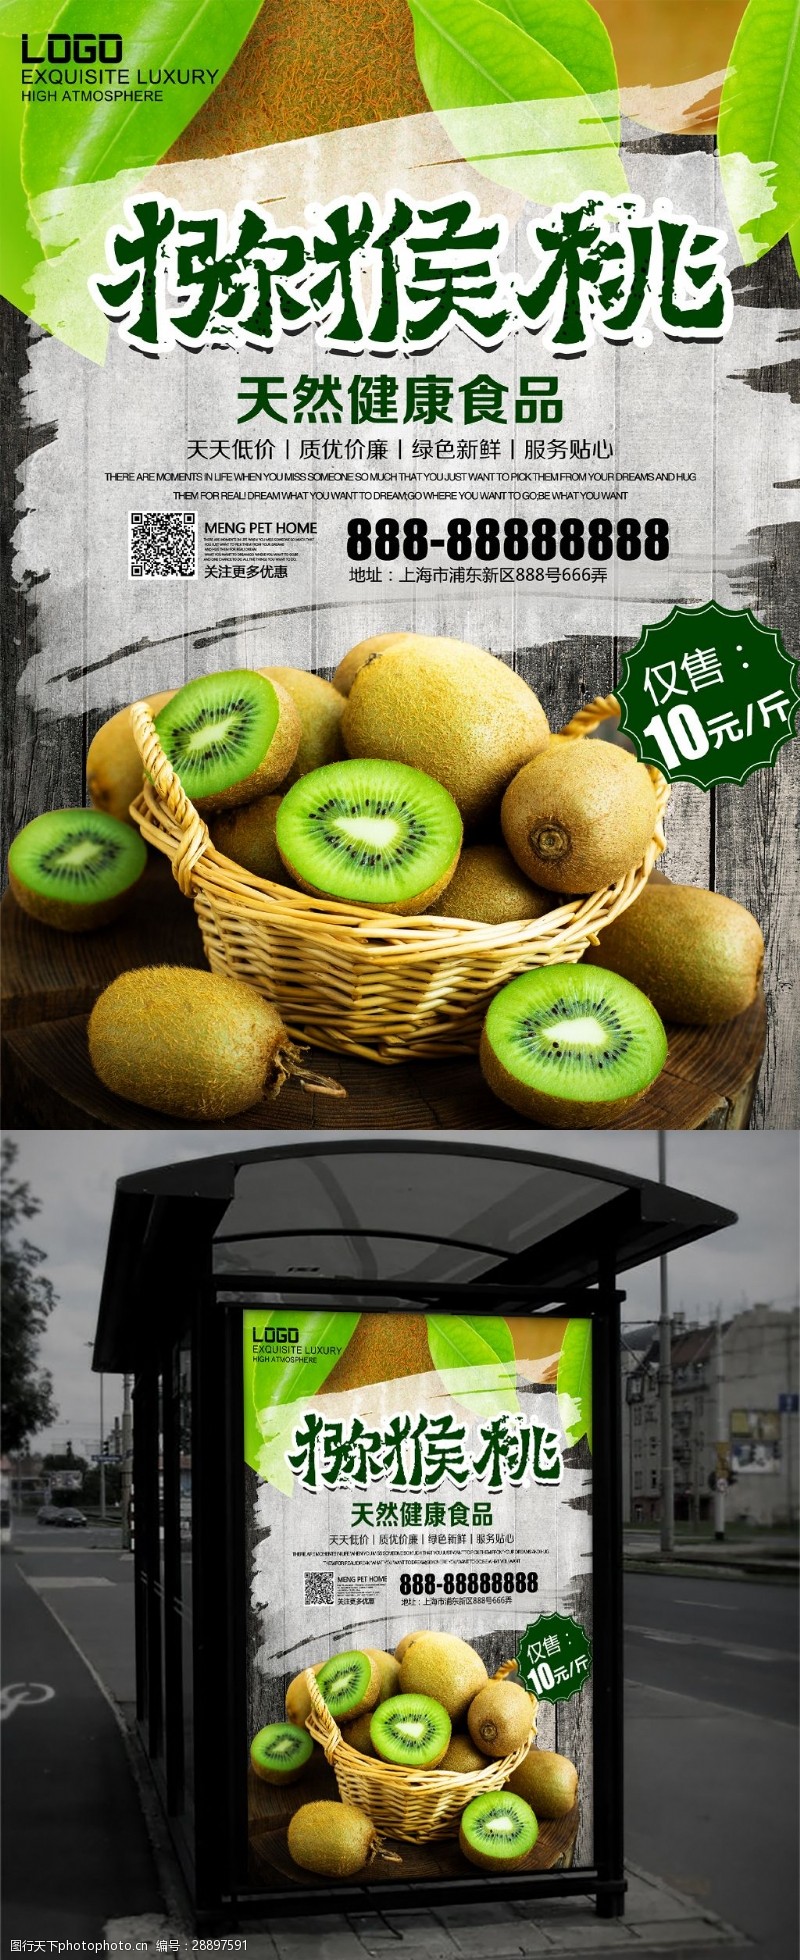 海鲜模板下载绿色水果新鲜猕猴桃水果店促销海报设计